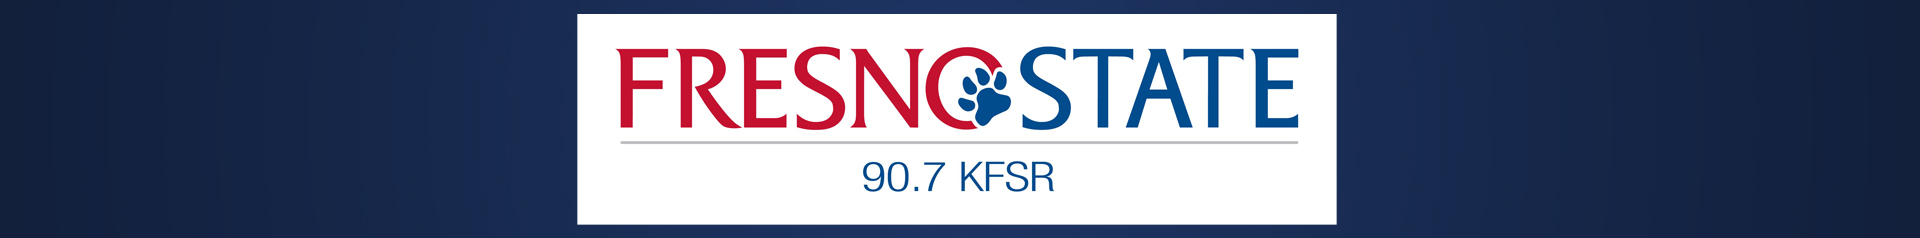 KFSR logo